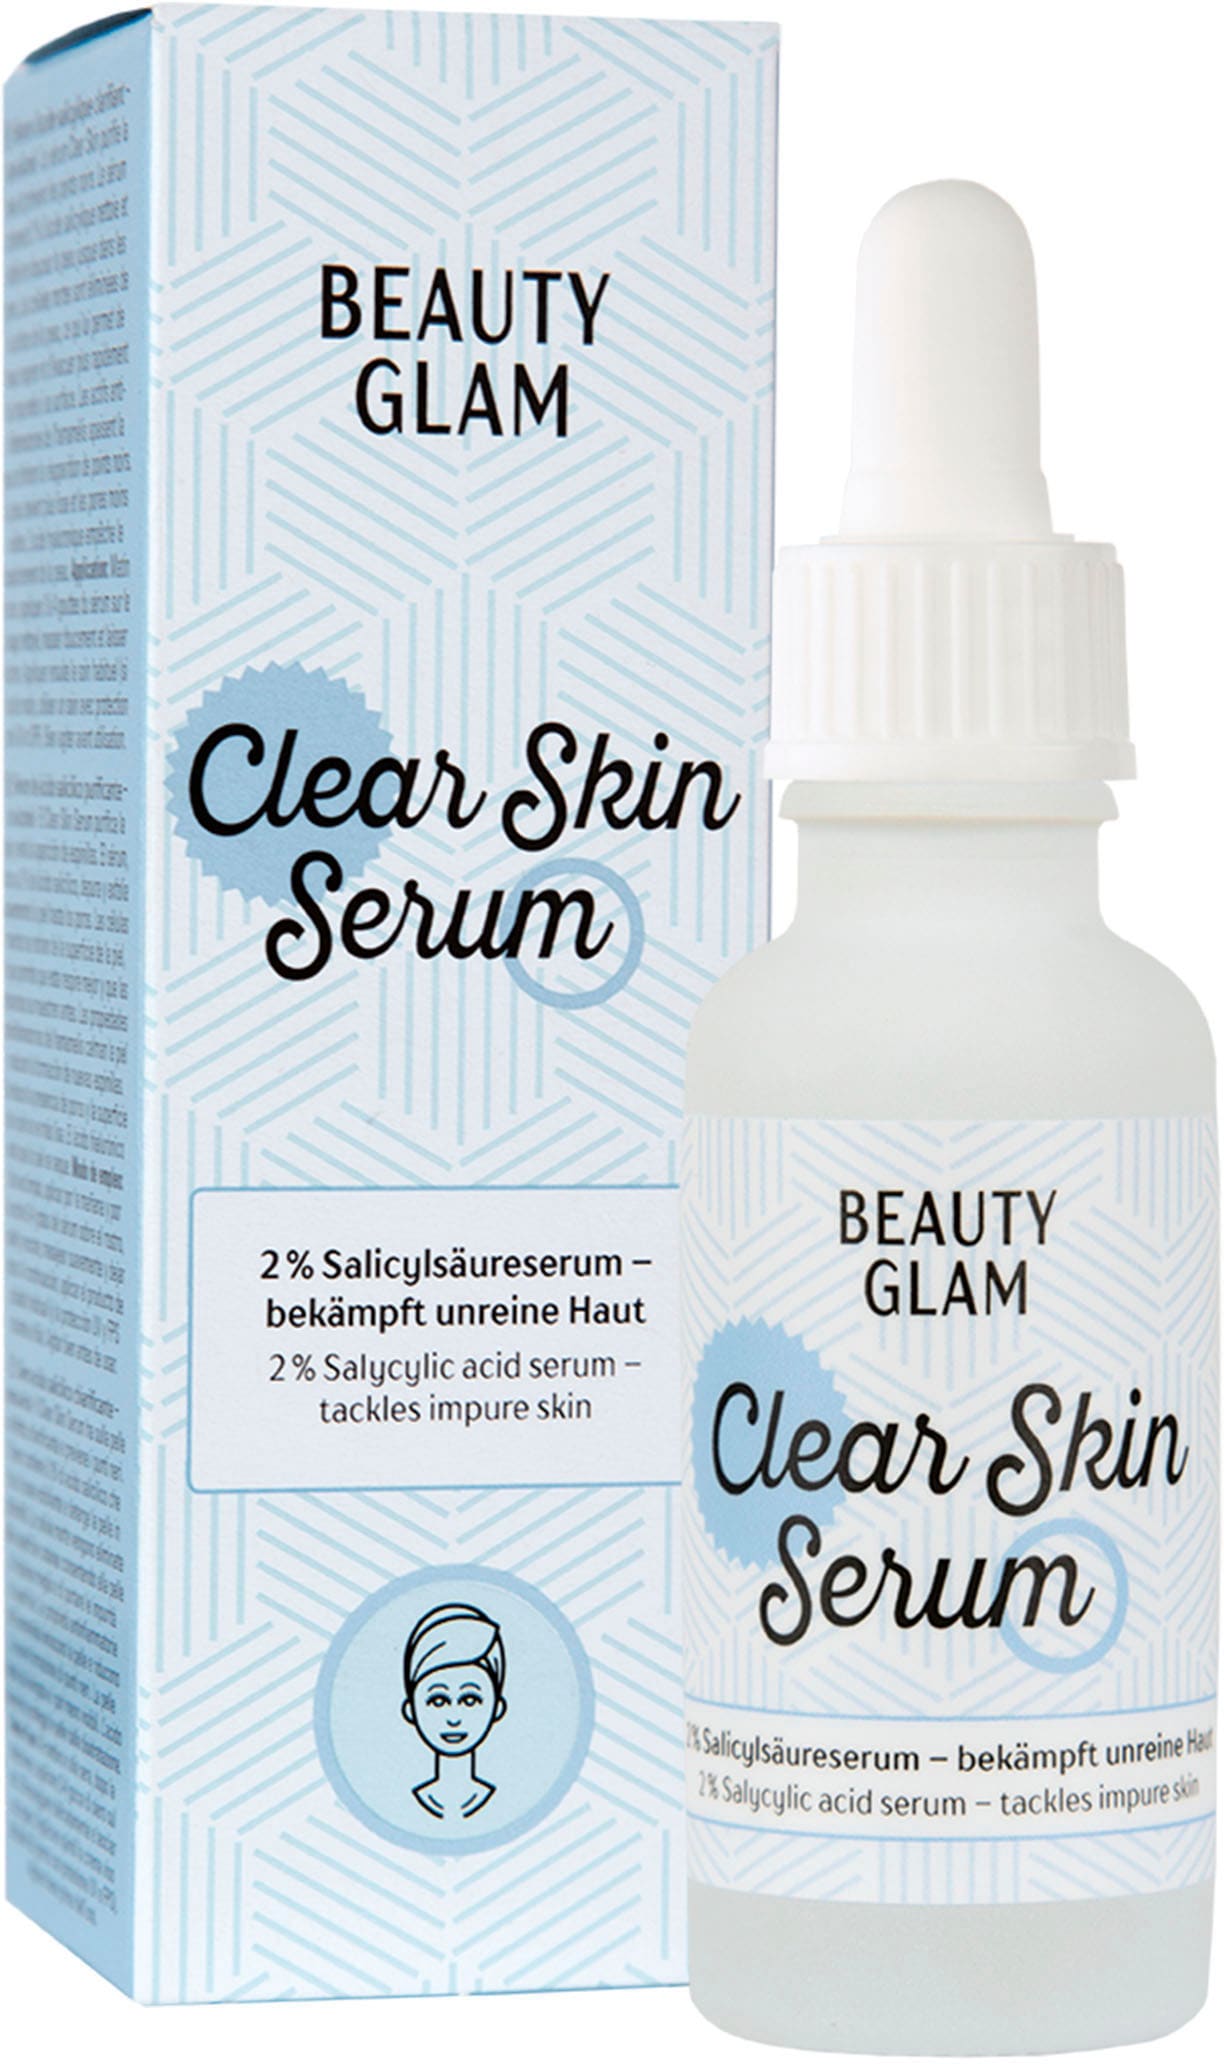 Serum« BEAUTY kaufen OTTO Gesichtsserum Glam »Beauty Shop Clear Skin im Online GLAM